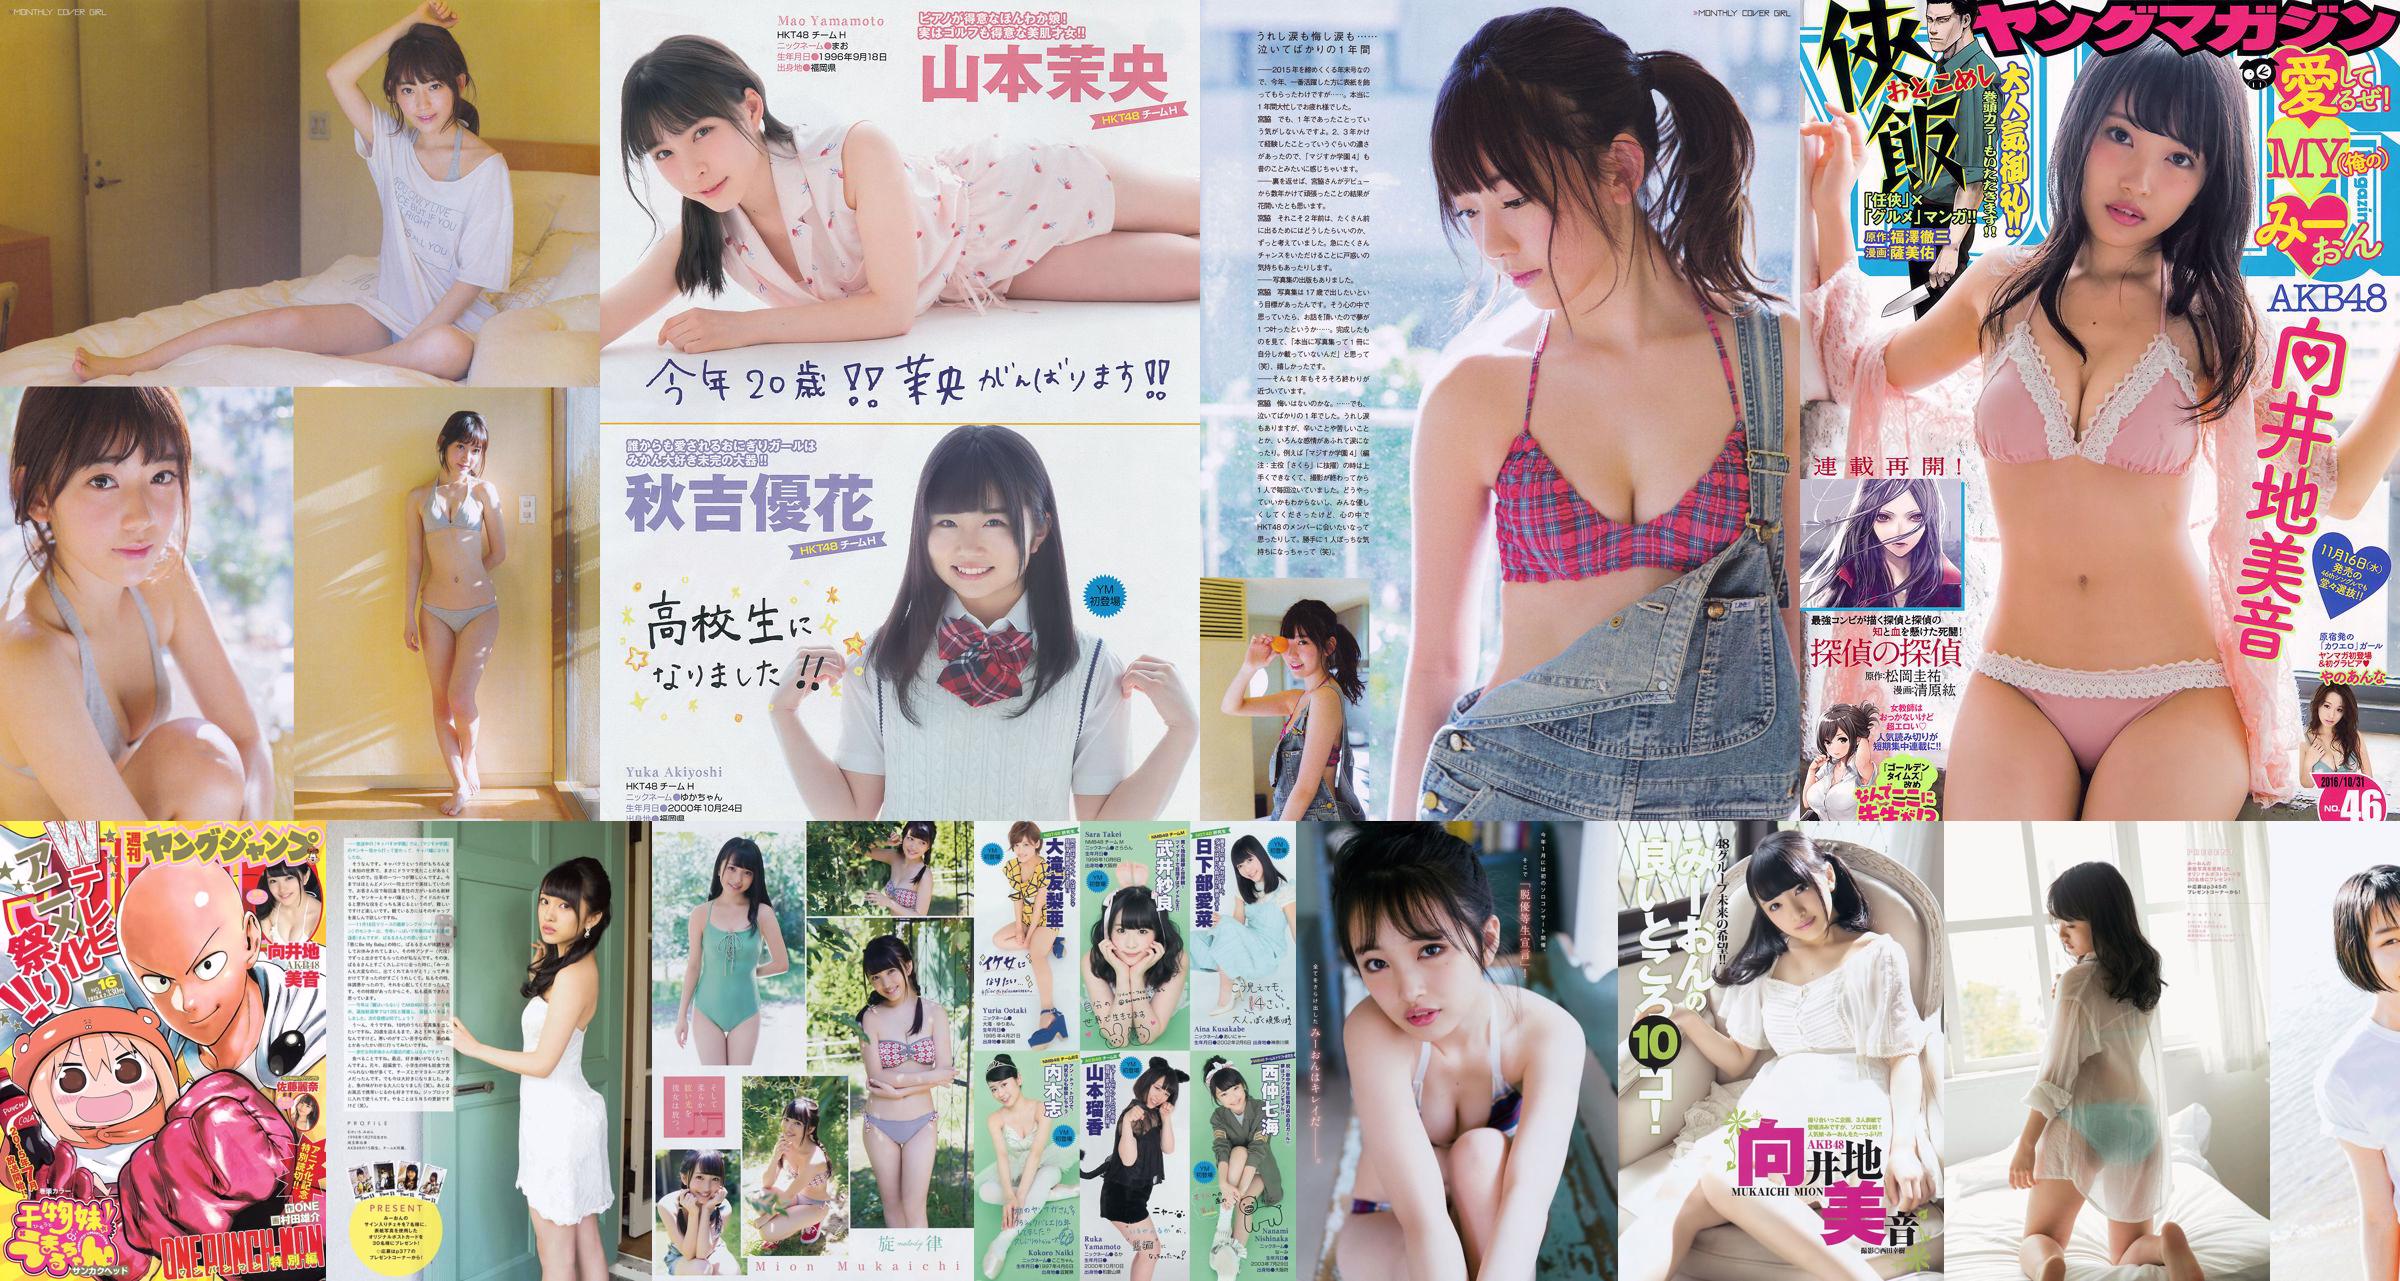 [Young Magazine] Mukaiji No.28 Photo Magazine 2016 No.e5f187 Página 3